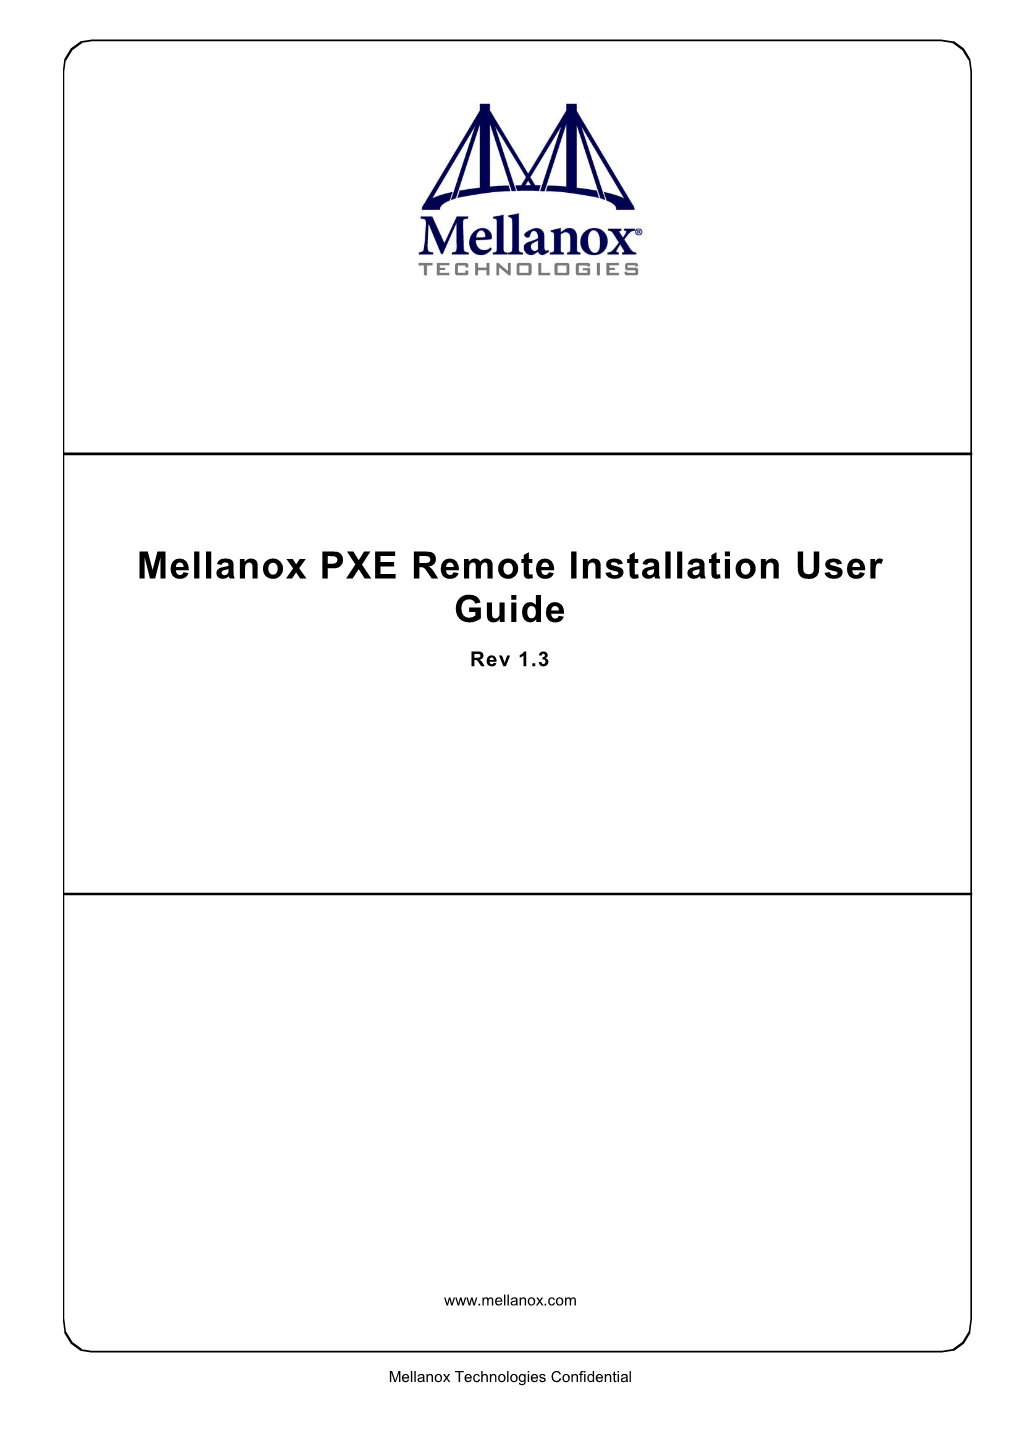 Mellanox PXE Remote Installation User Guide Rev 1.3